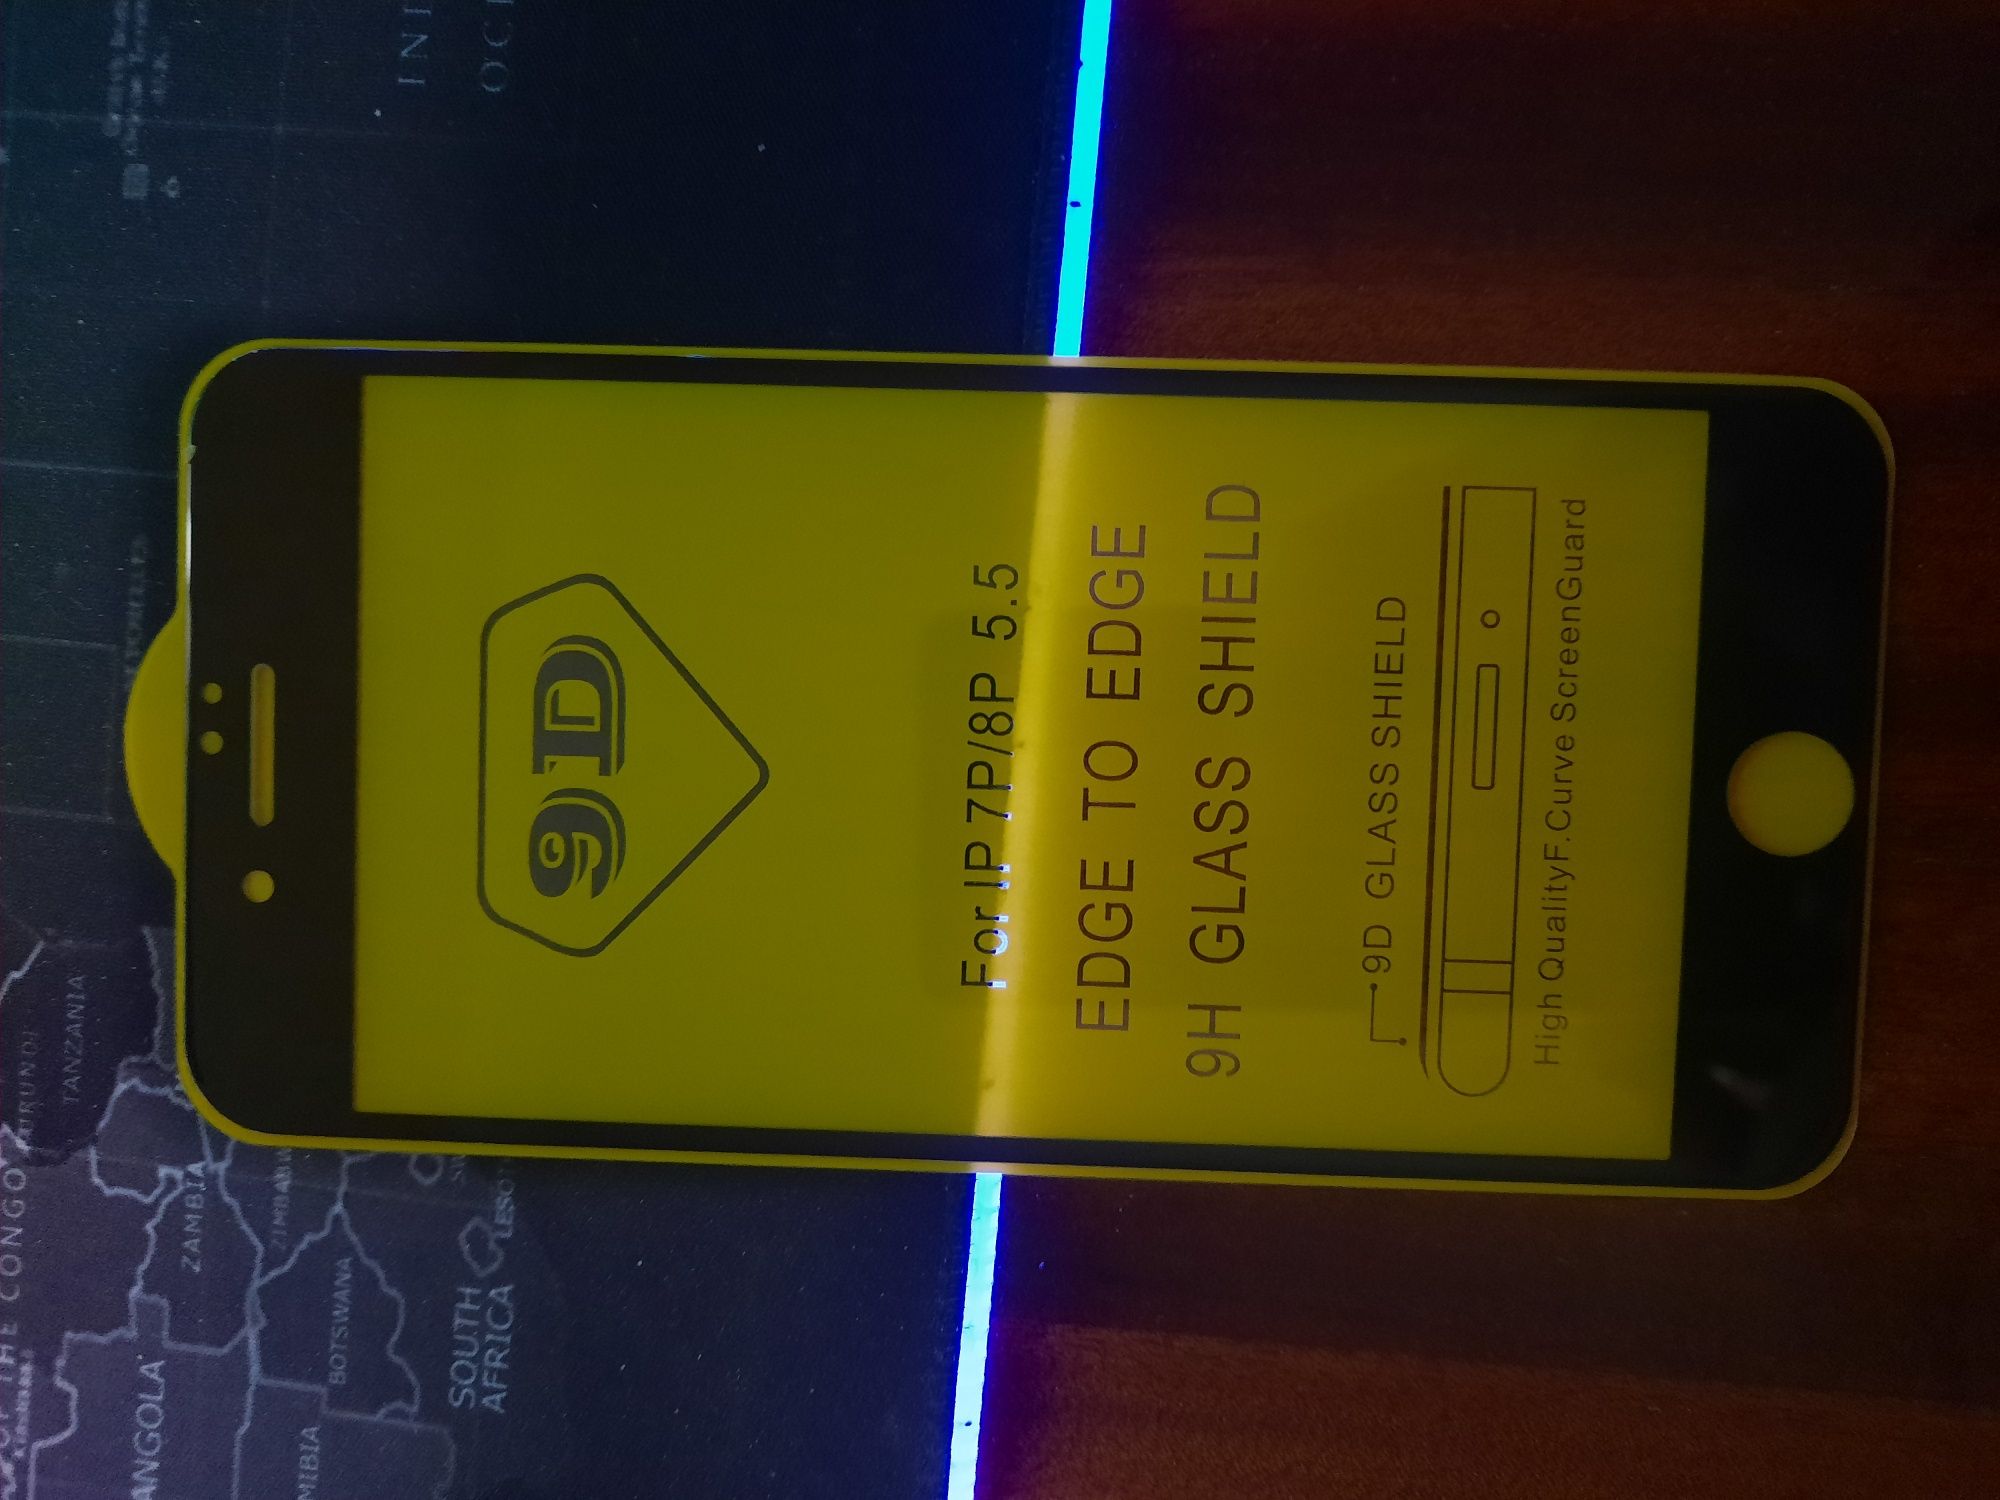 10D захисне скло для iPhone*Топ якість*Найкраща ціна